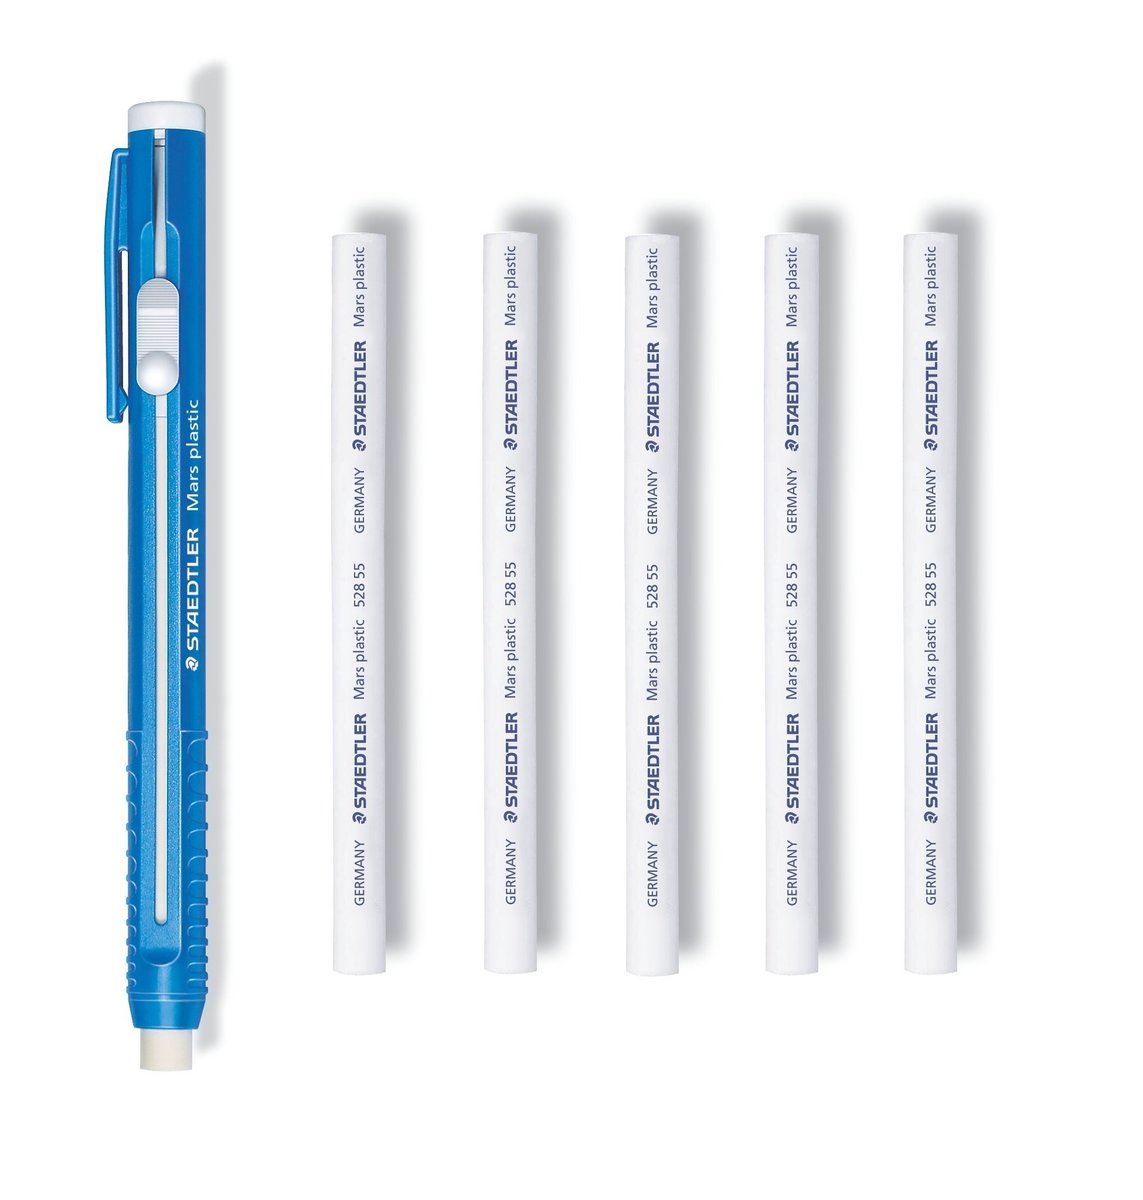 German brand Length adjustable body Mars plastic 528 50 Pen Shape Eraser 3set Solid eraser with little residue Refills 6pieces STAEDTLER Stick Eraser Set 